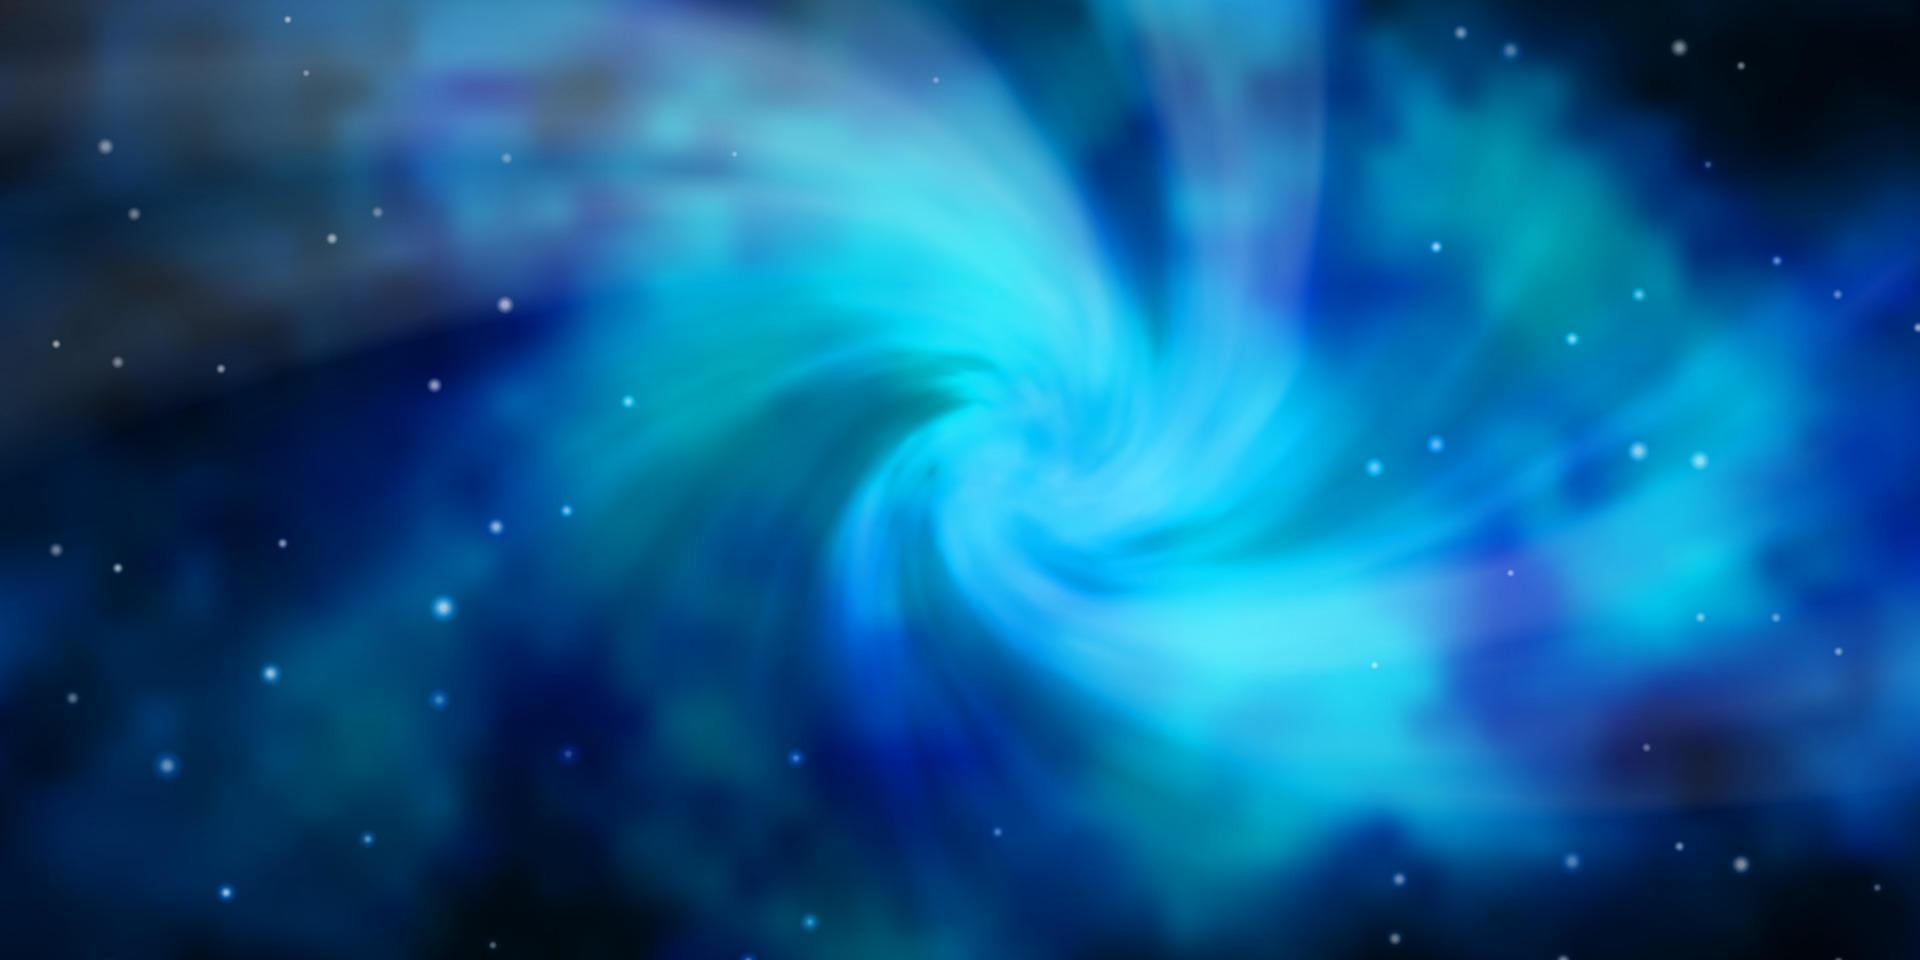 fundo vector azul escuro com estrelas pequenas e grandes.